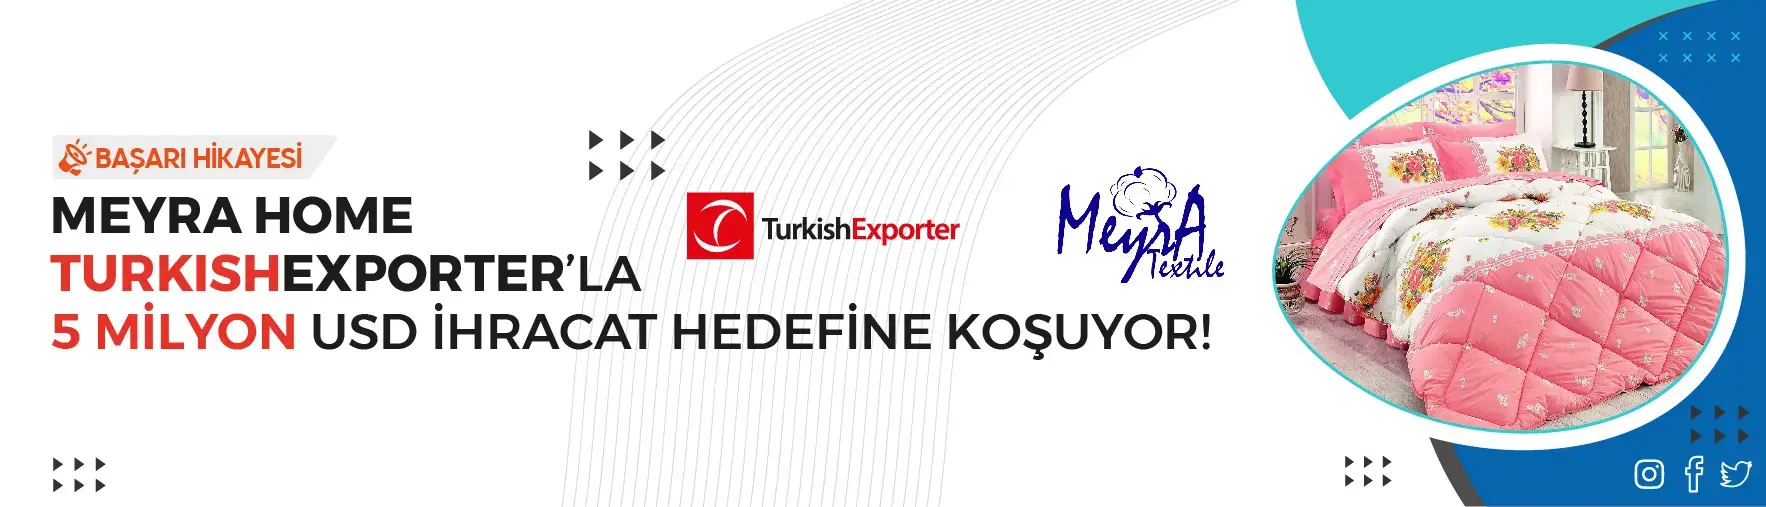 Meyra Home TurkishExporter’la 5 milyon USD ihracat hedefine koşuyor!